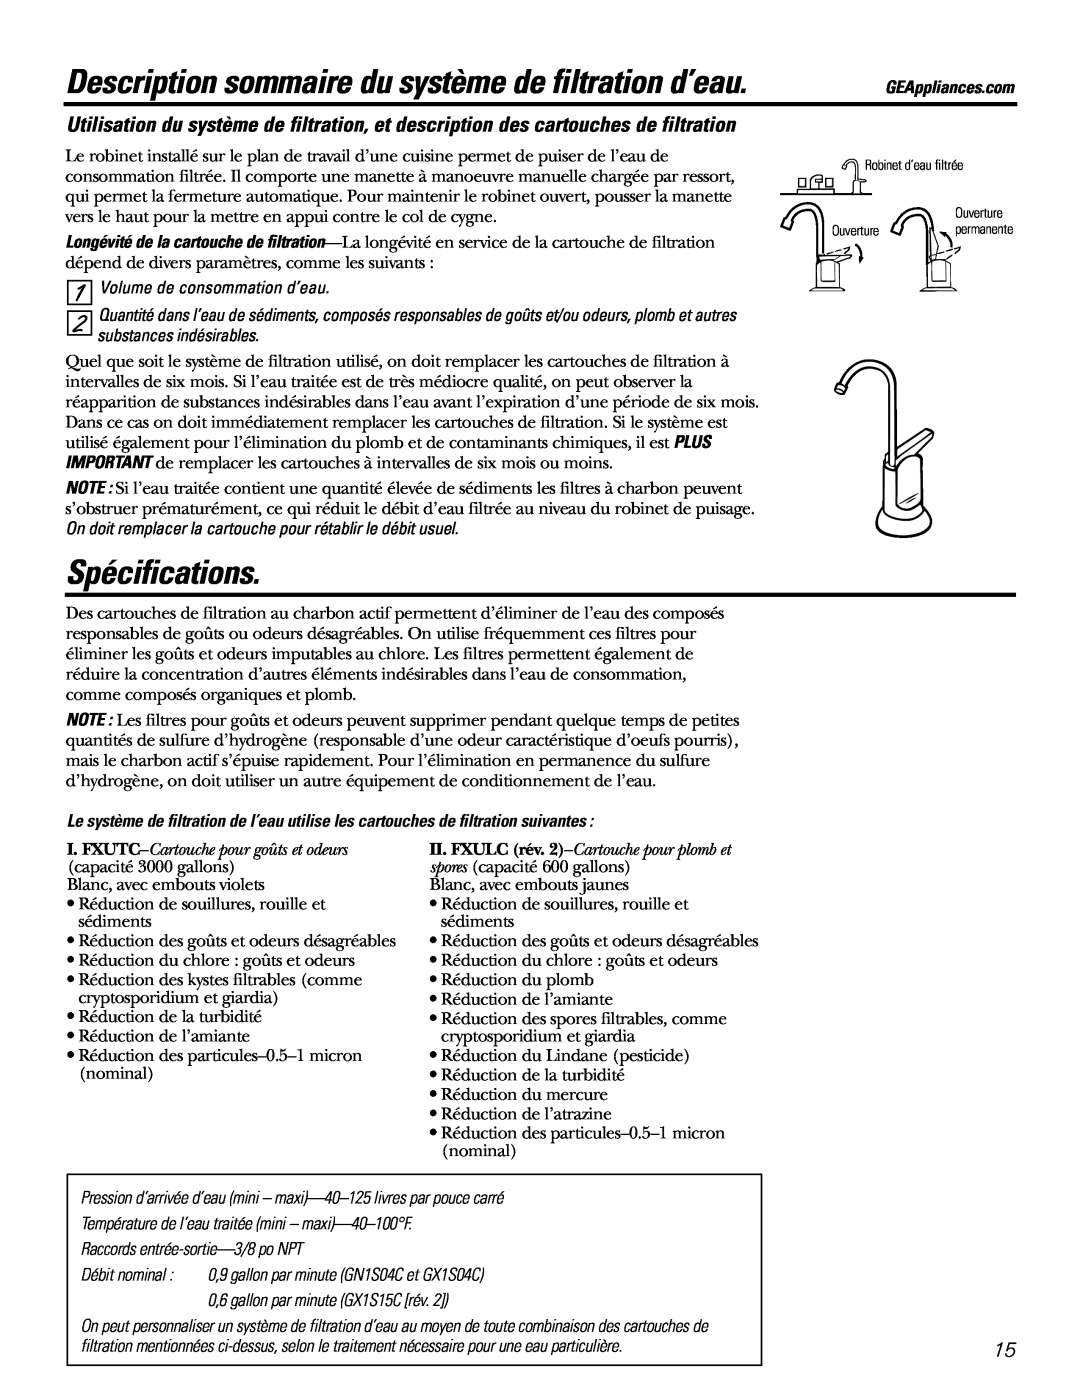 GE 215C1044P010-3 Description sommaire du système de filtration d’eau, Spécifications, Volume de consommation d’eau 